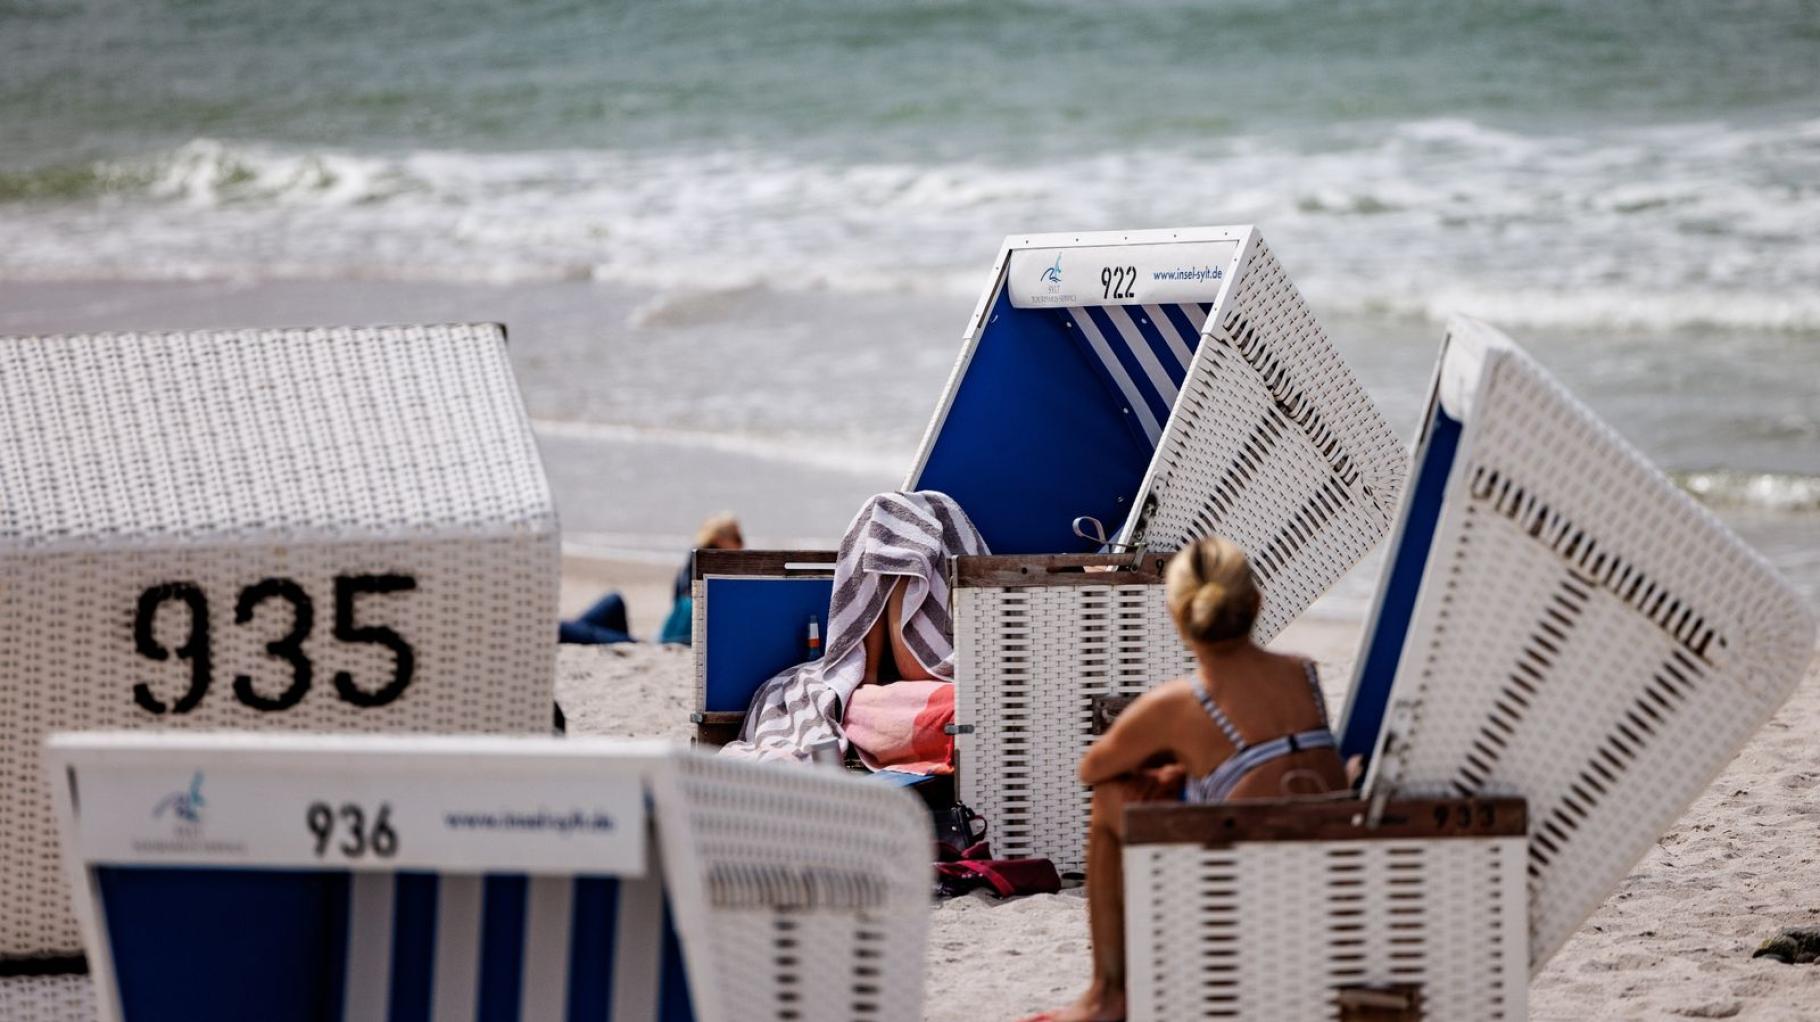 Strandkörbe für Sommer an der Ostsee schon jetzt begehrt